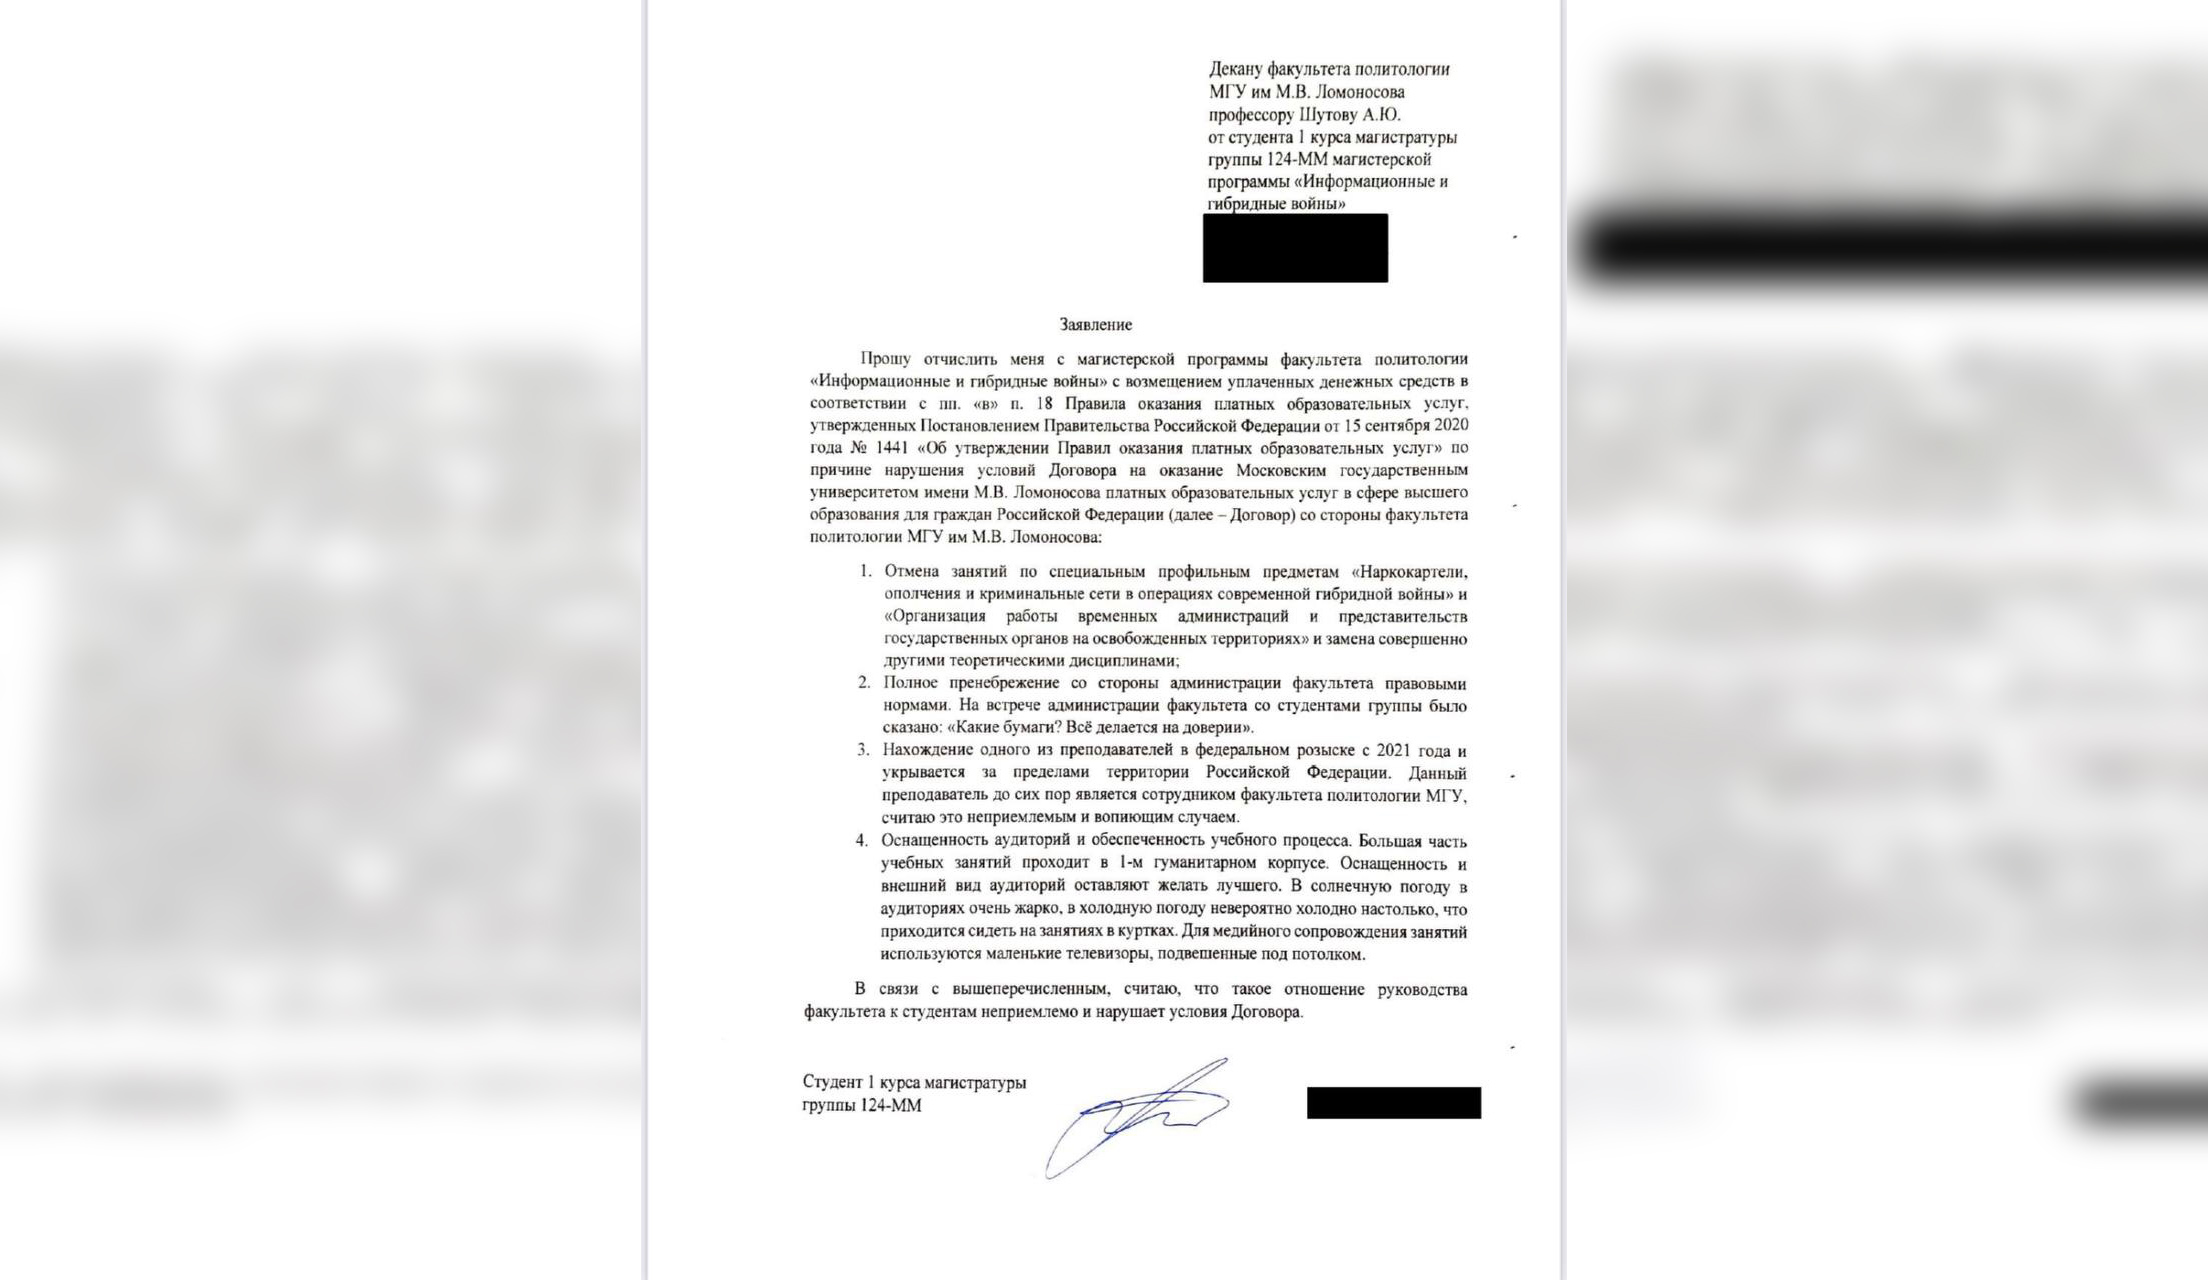 Письмо студента об отчислении из МГУ им М.В. Ломоносова. Фото © t.me / Честный русский